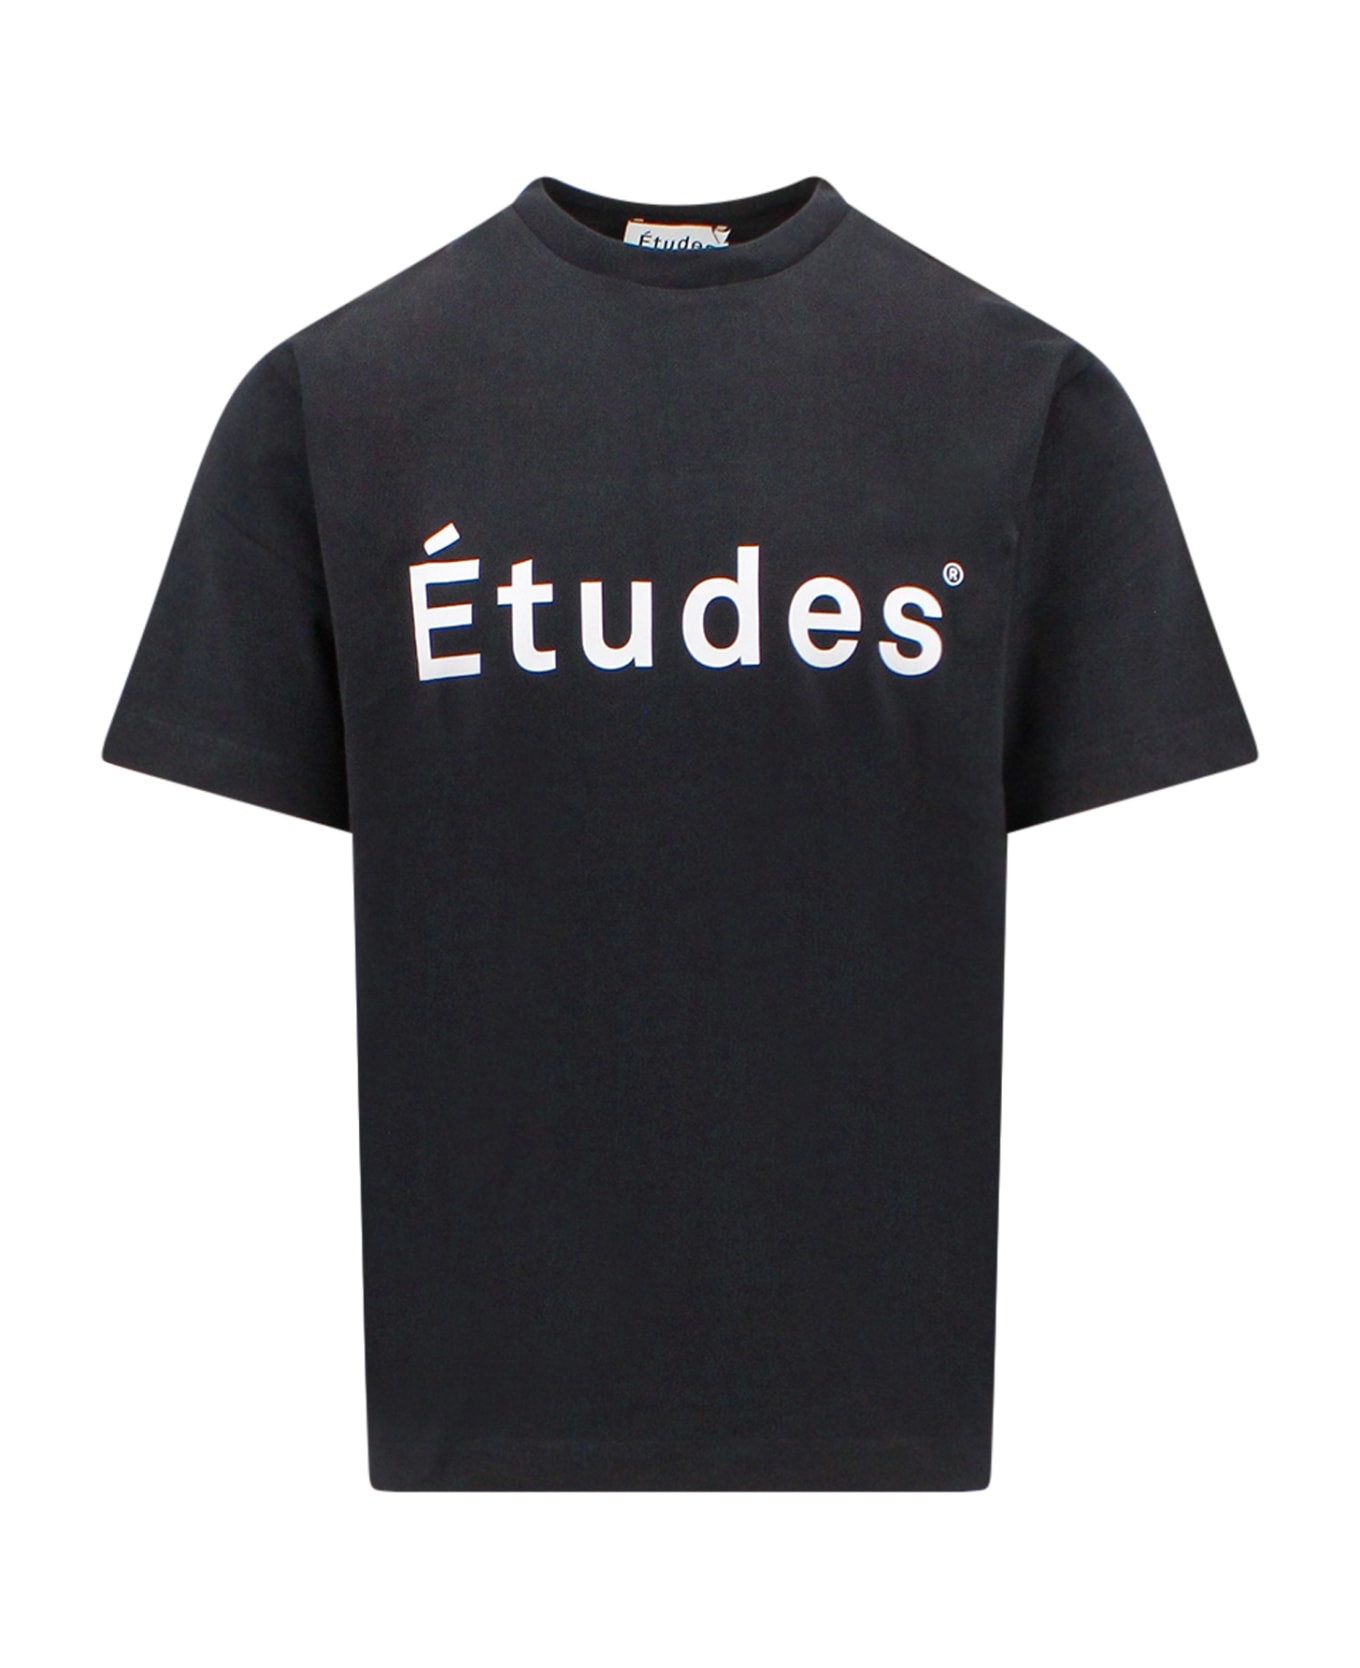 Études T-shirt シャツ